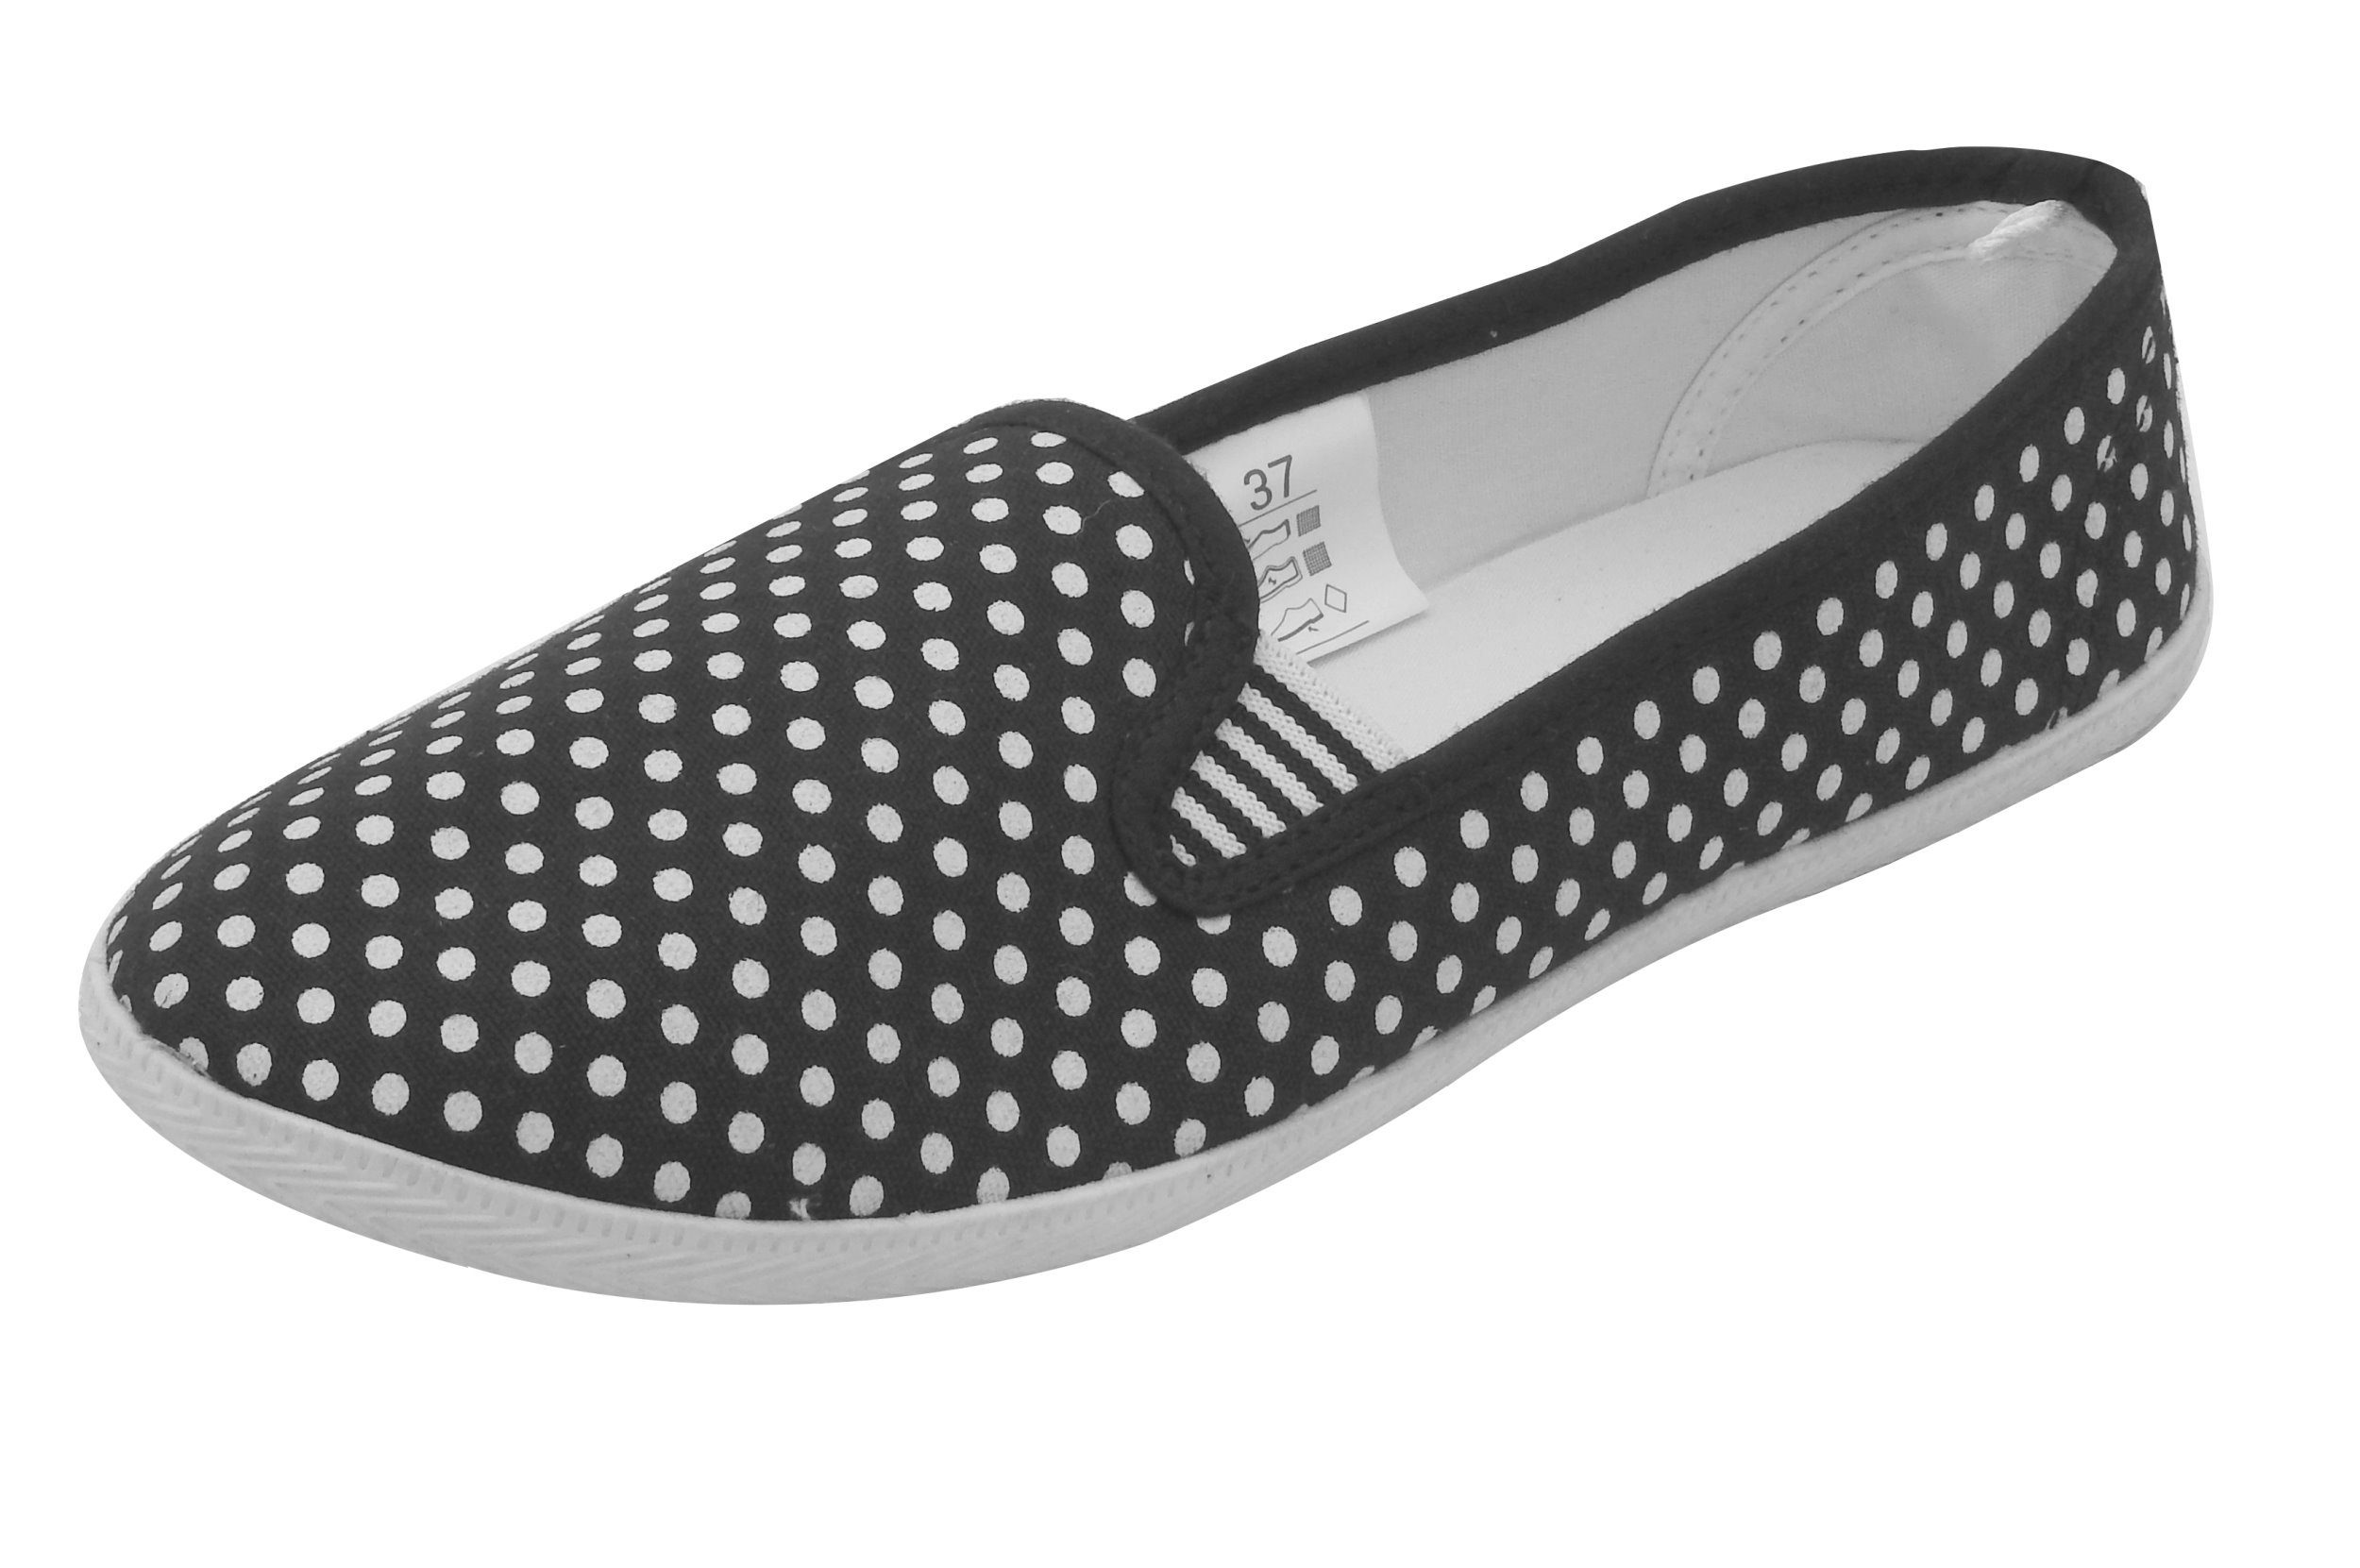 Schuhe Flats Slipper dynamic24 Loafer Canvas Schwarz Sneaker Freizeitschuhe Slip Damen Stoff On